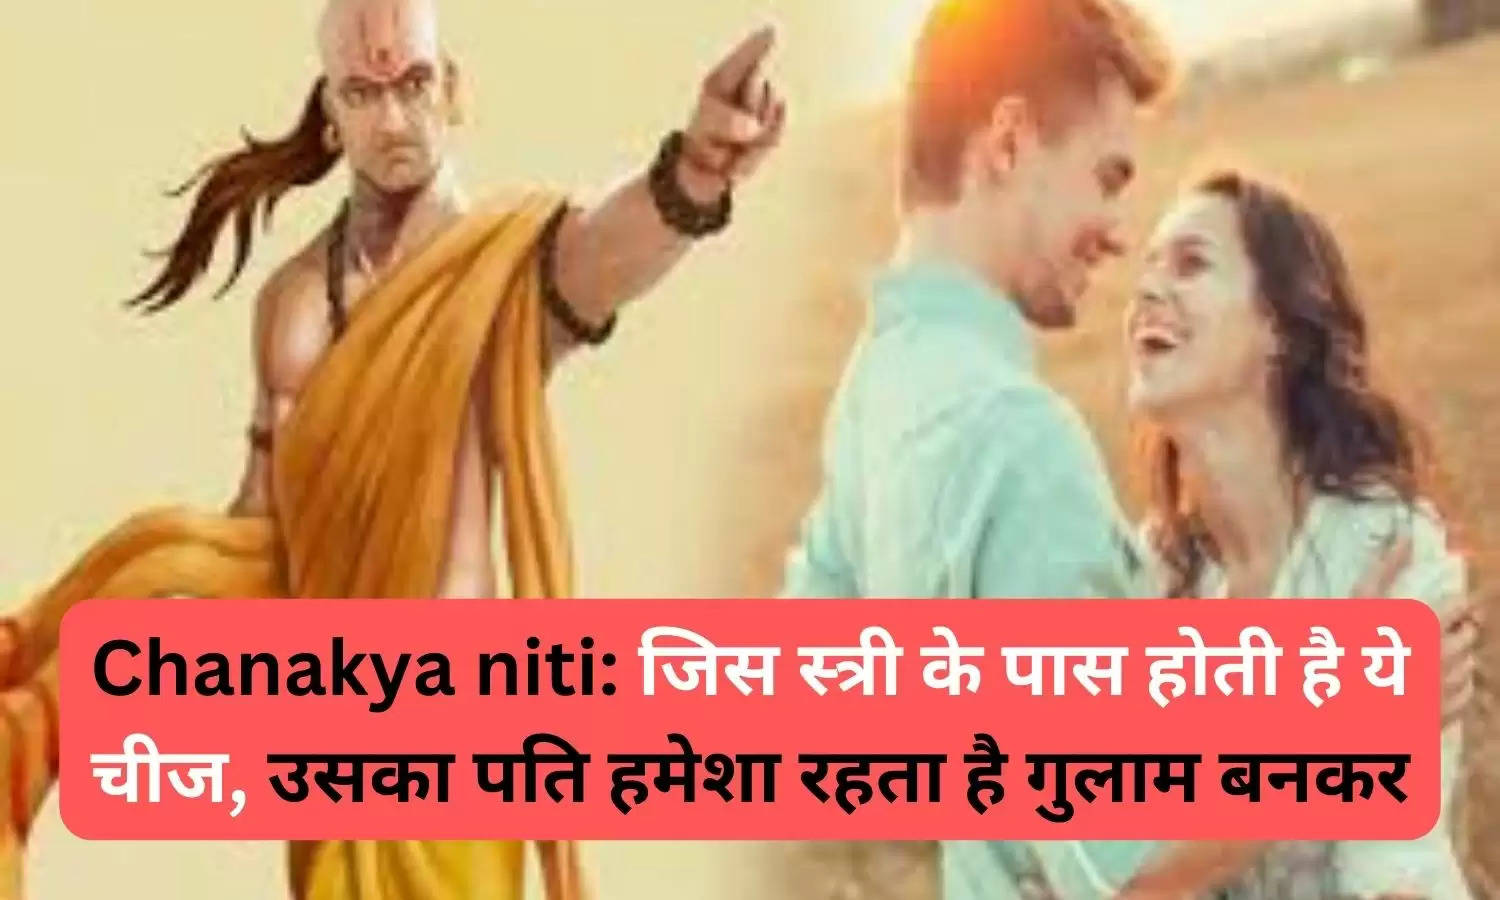 Chanakya niti: जिस स्त्री के पास होती है ये चीज, उसका पति हमेशा रहता है गुलाम बनकर